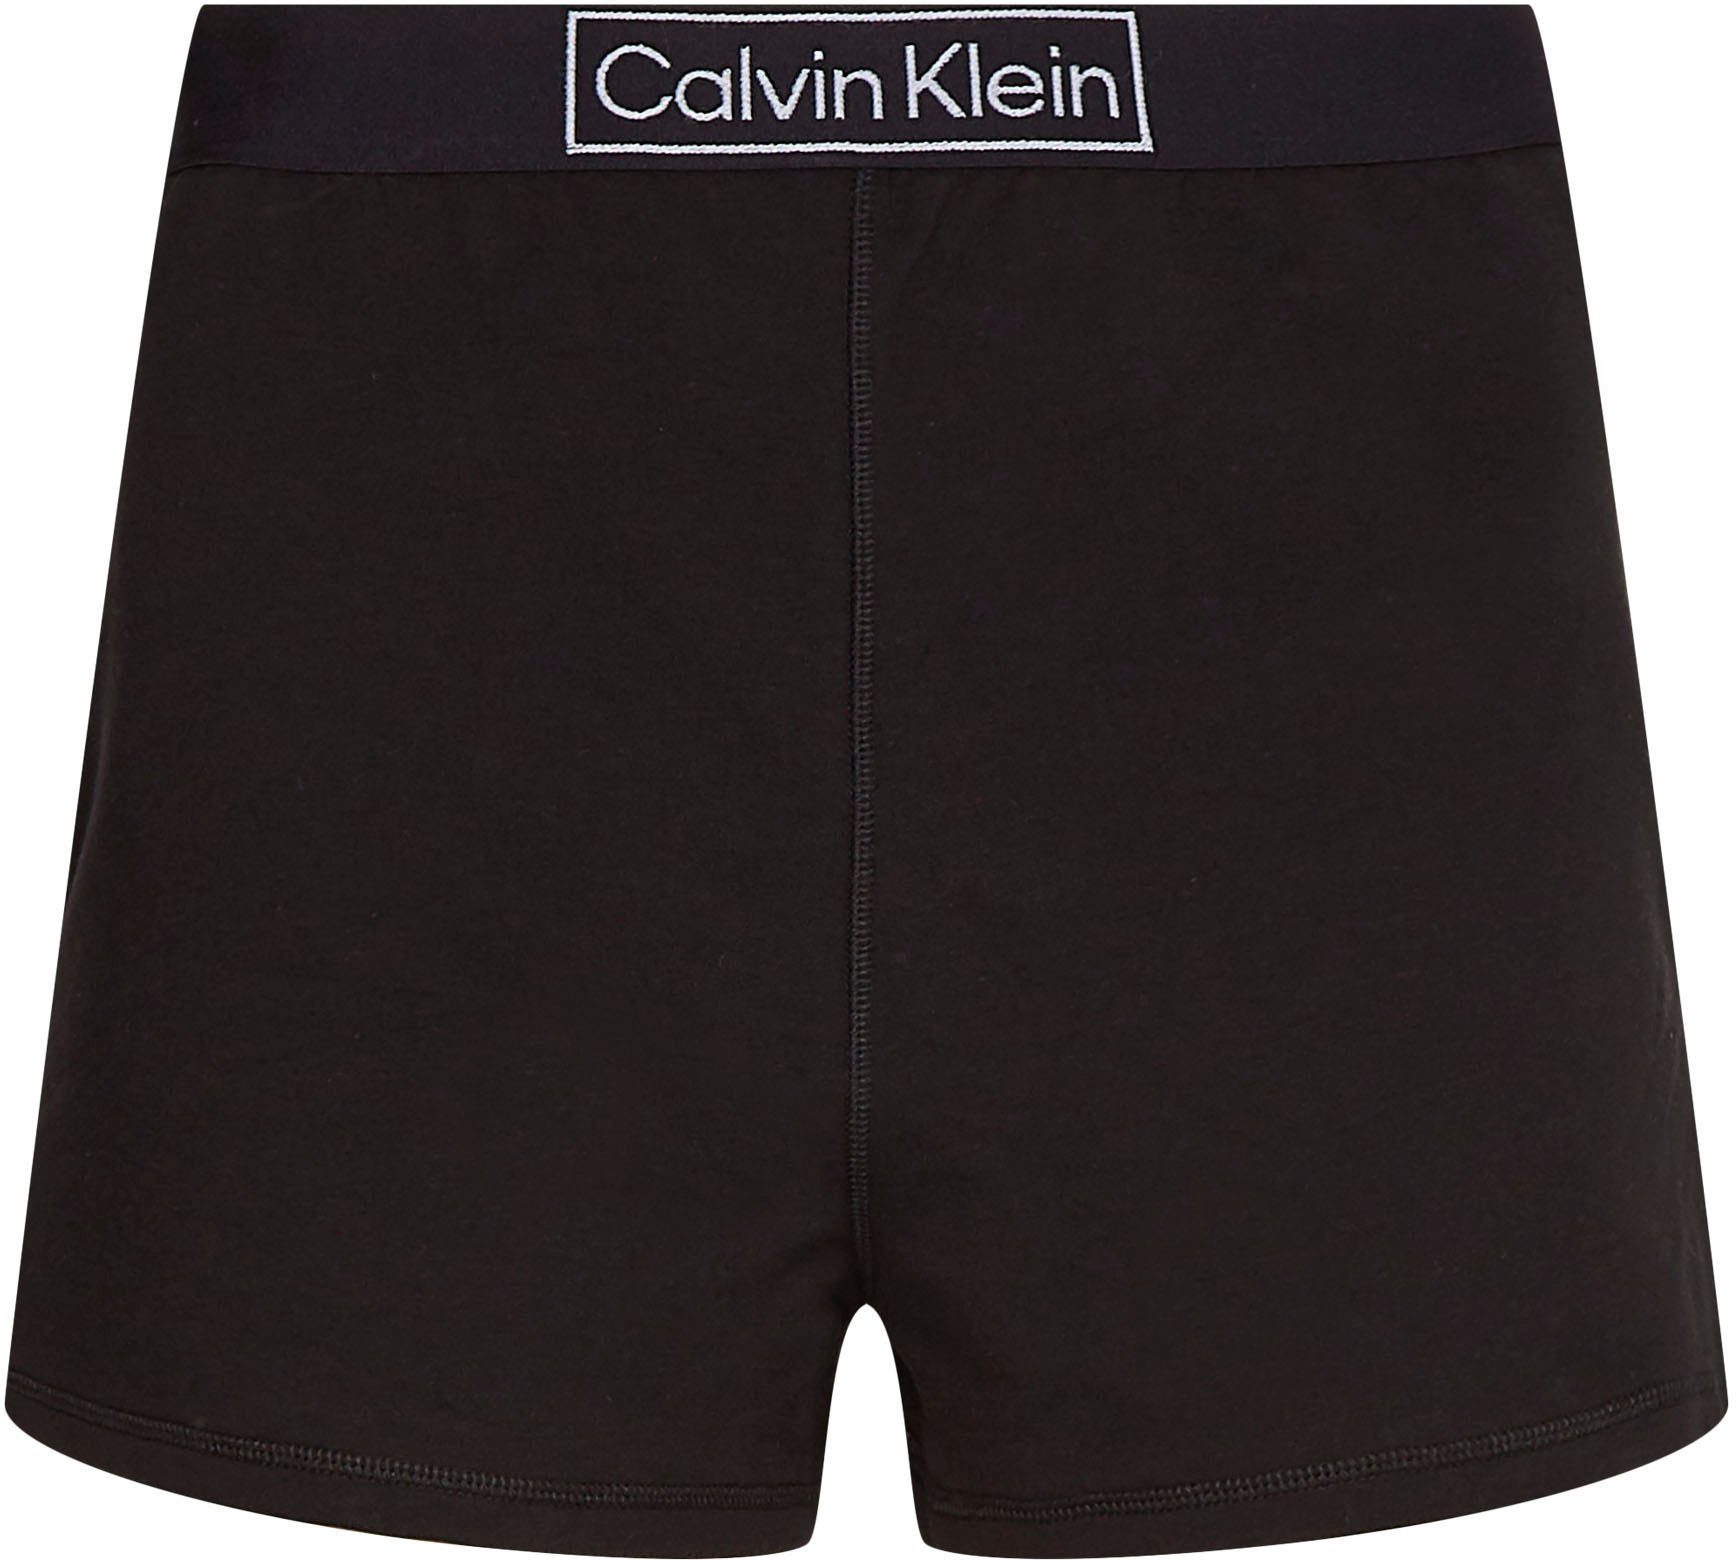 Gummizug Klein Calvin Schlafshorts bequemen mit Underwear